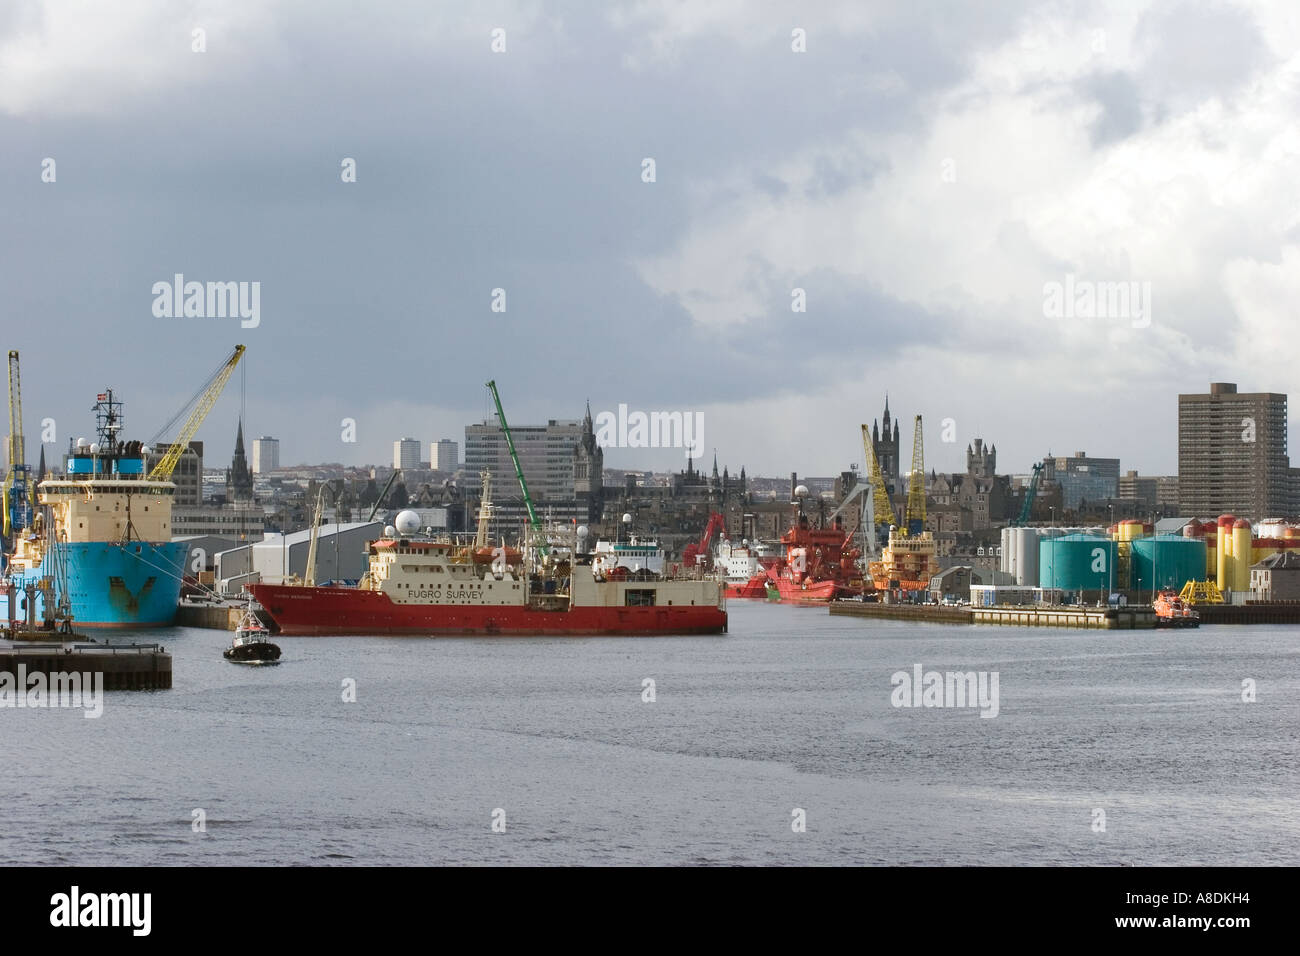 Aberdeen Scottish Harbor Boote, Fähren und Docks mit dem City Centre Beyond, Aberdeenshire, Schottland, großbritannien Stockfoto